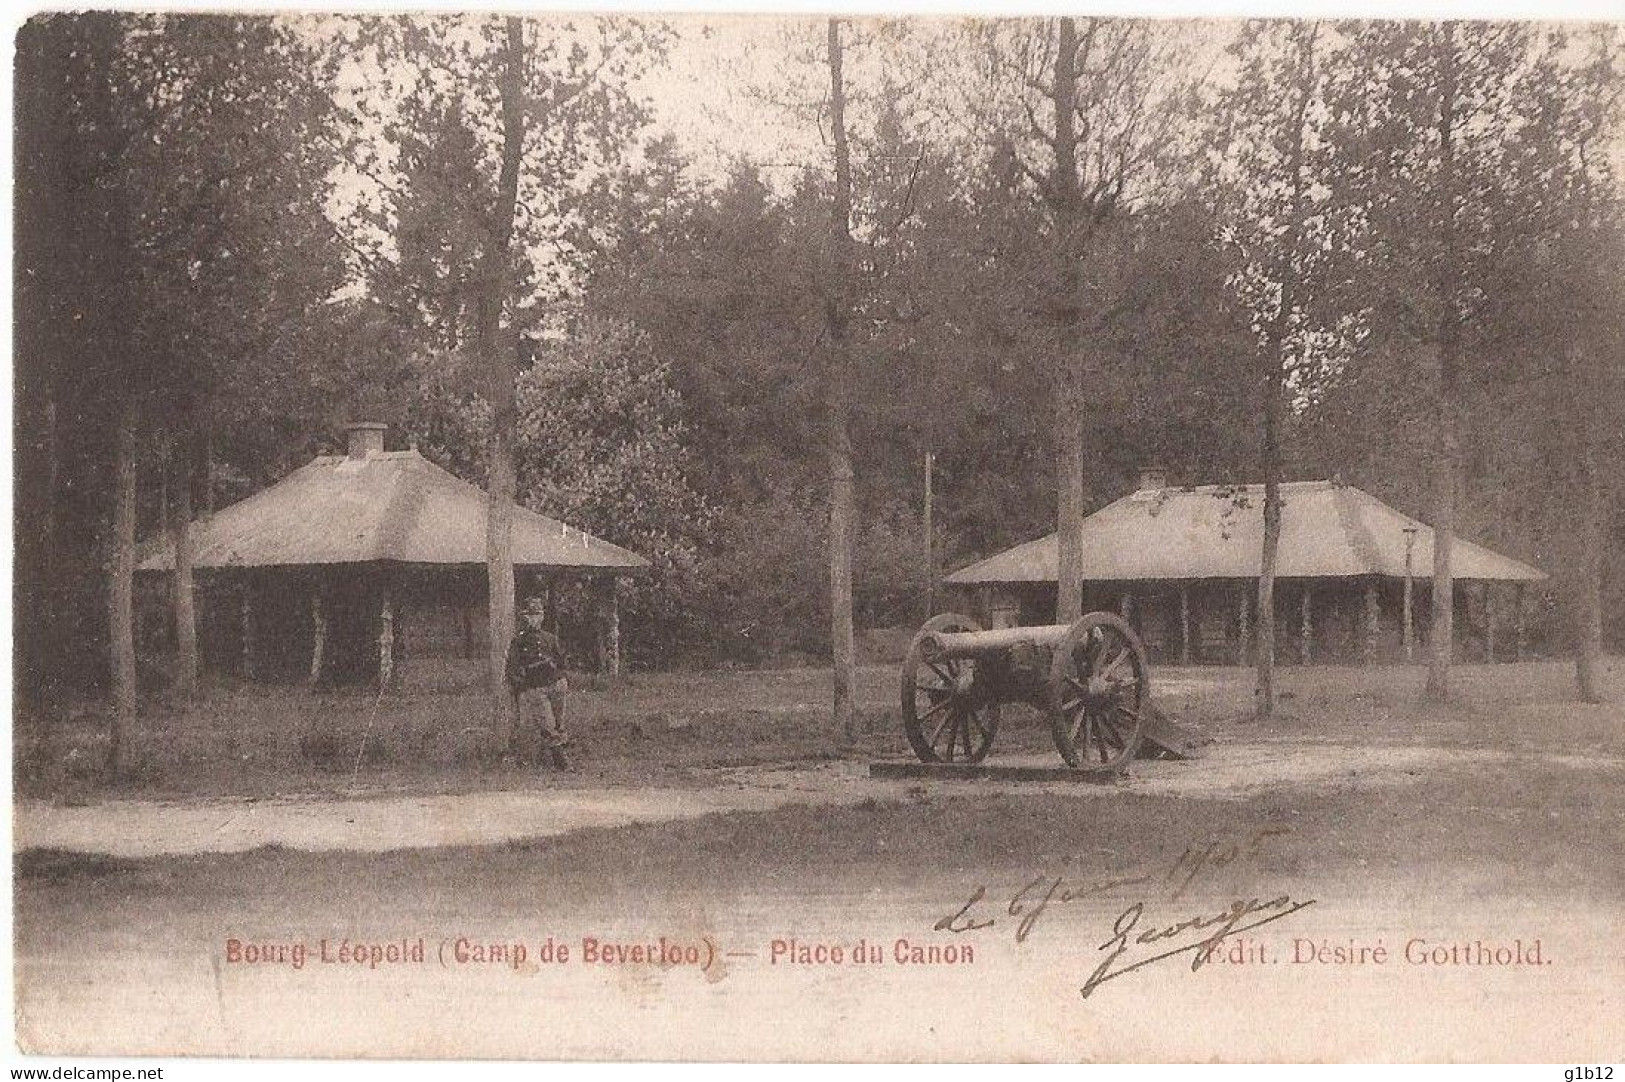 BOURG - LEOPOLD - 6 CARTES - Leopoldsburg (Beverloo Camp)